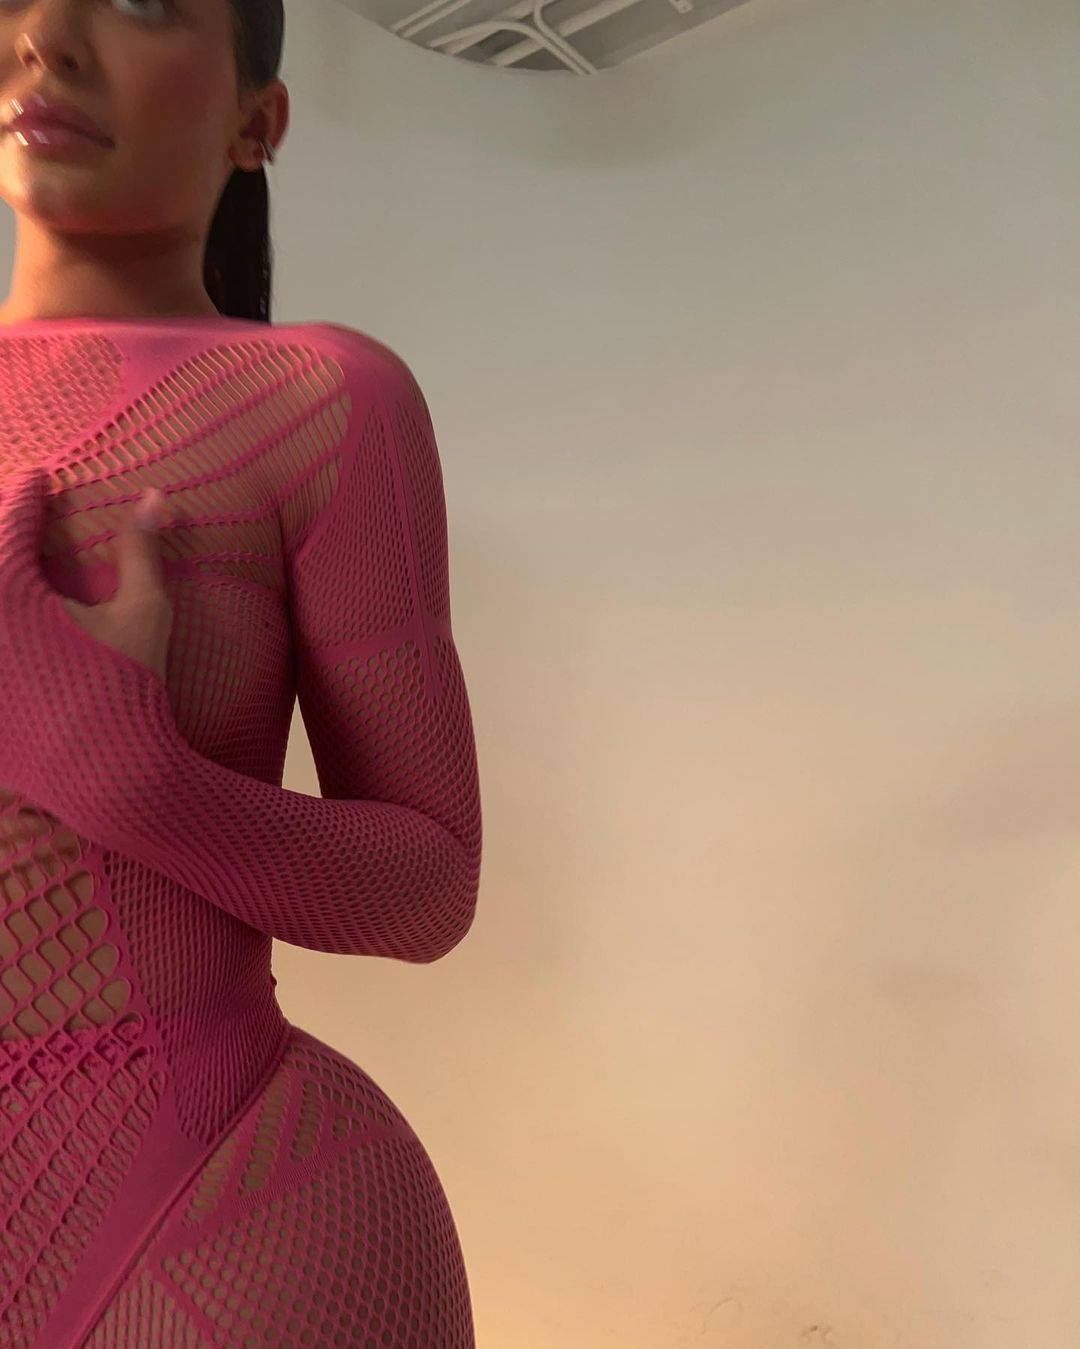 超模凯莉·詹娜拍摄性感写真，身材前凸后翘曲线迷人